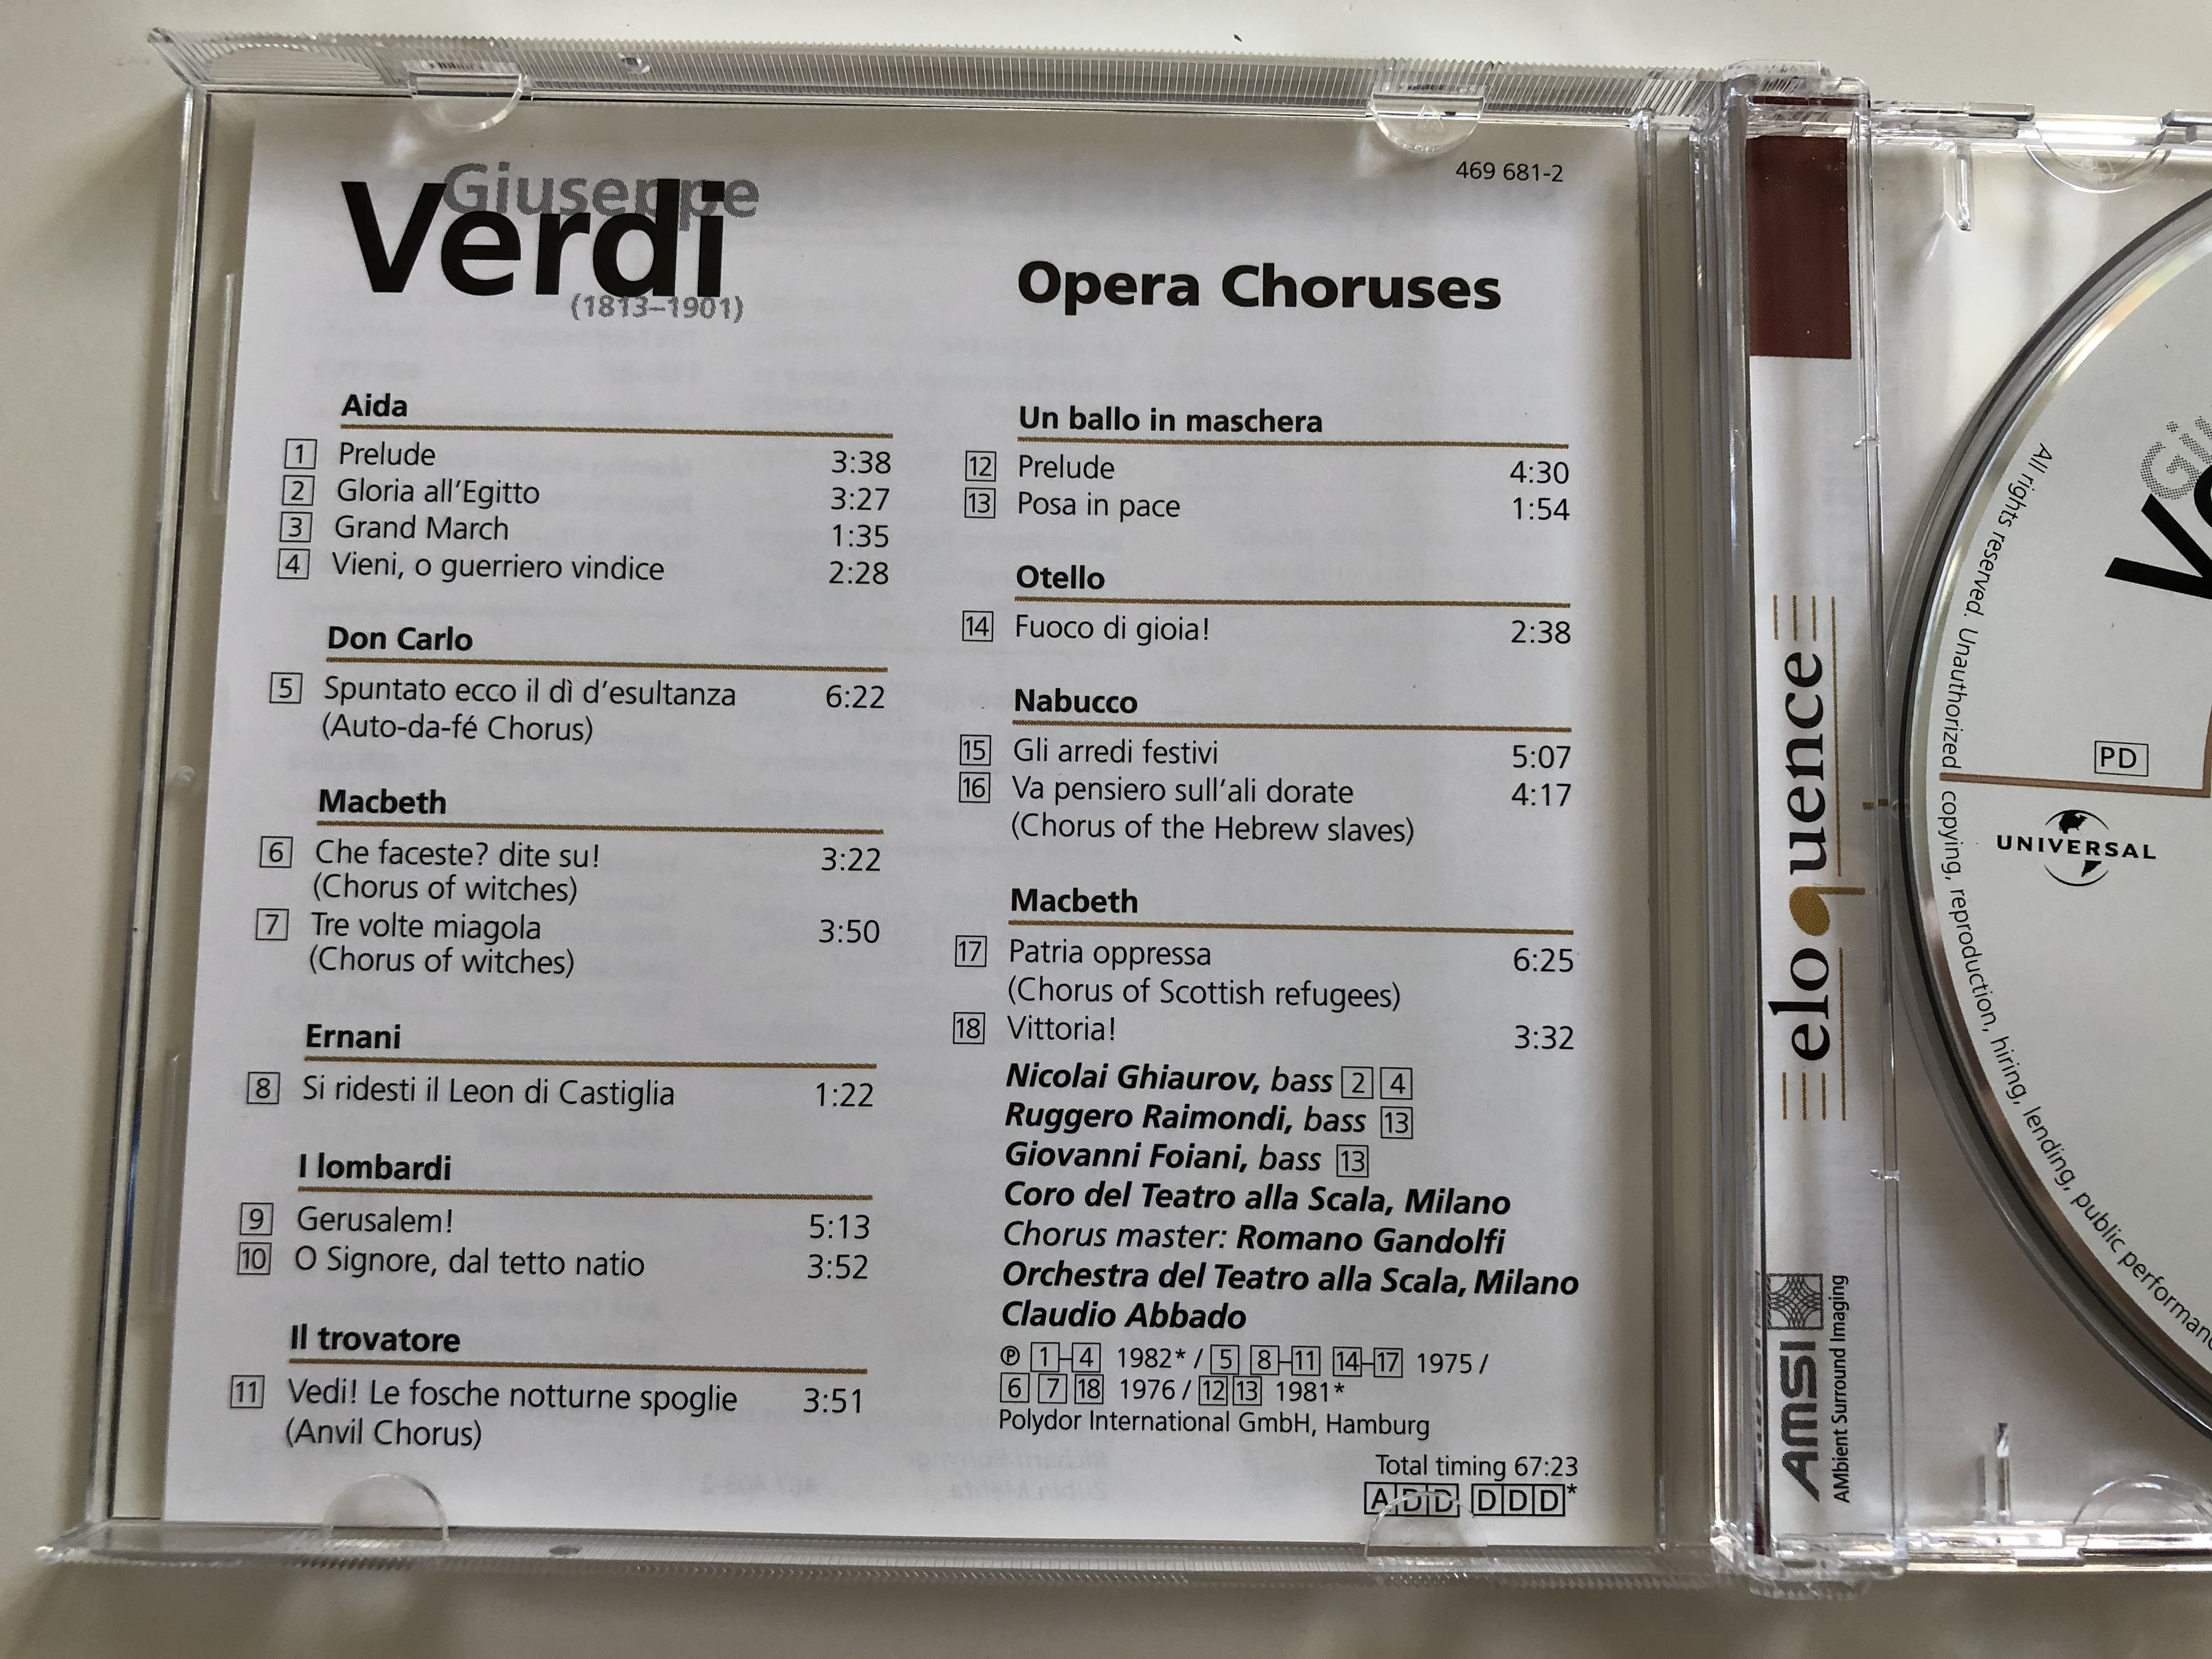 giuseppe-verdi-opera-choruses-coro-del-teatro-alla-scala-orchestra-del-teatro-alla-scala-claudio-abbado-deutsche-grammophon-audio-cd-469-681-2-2-.jpg